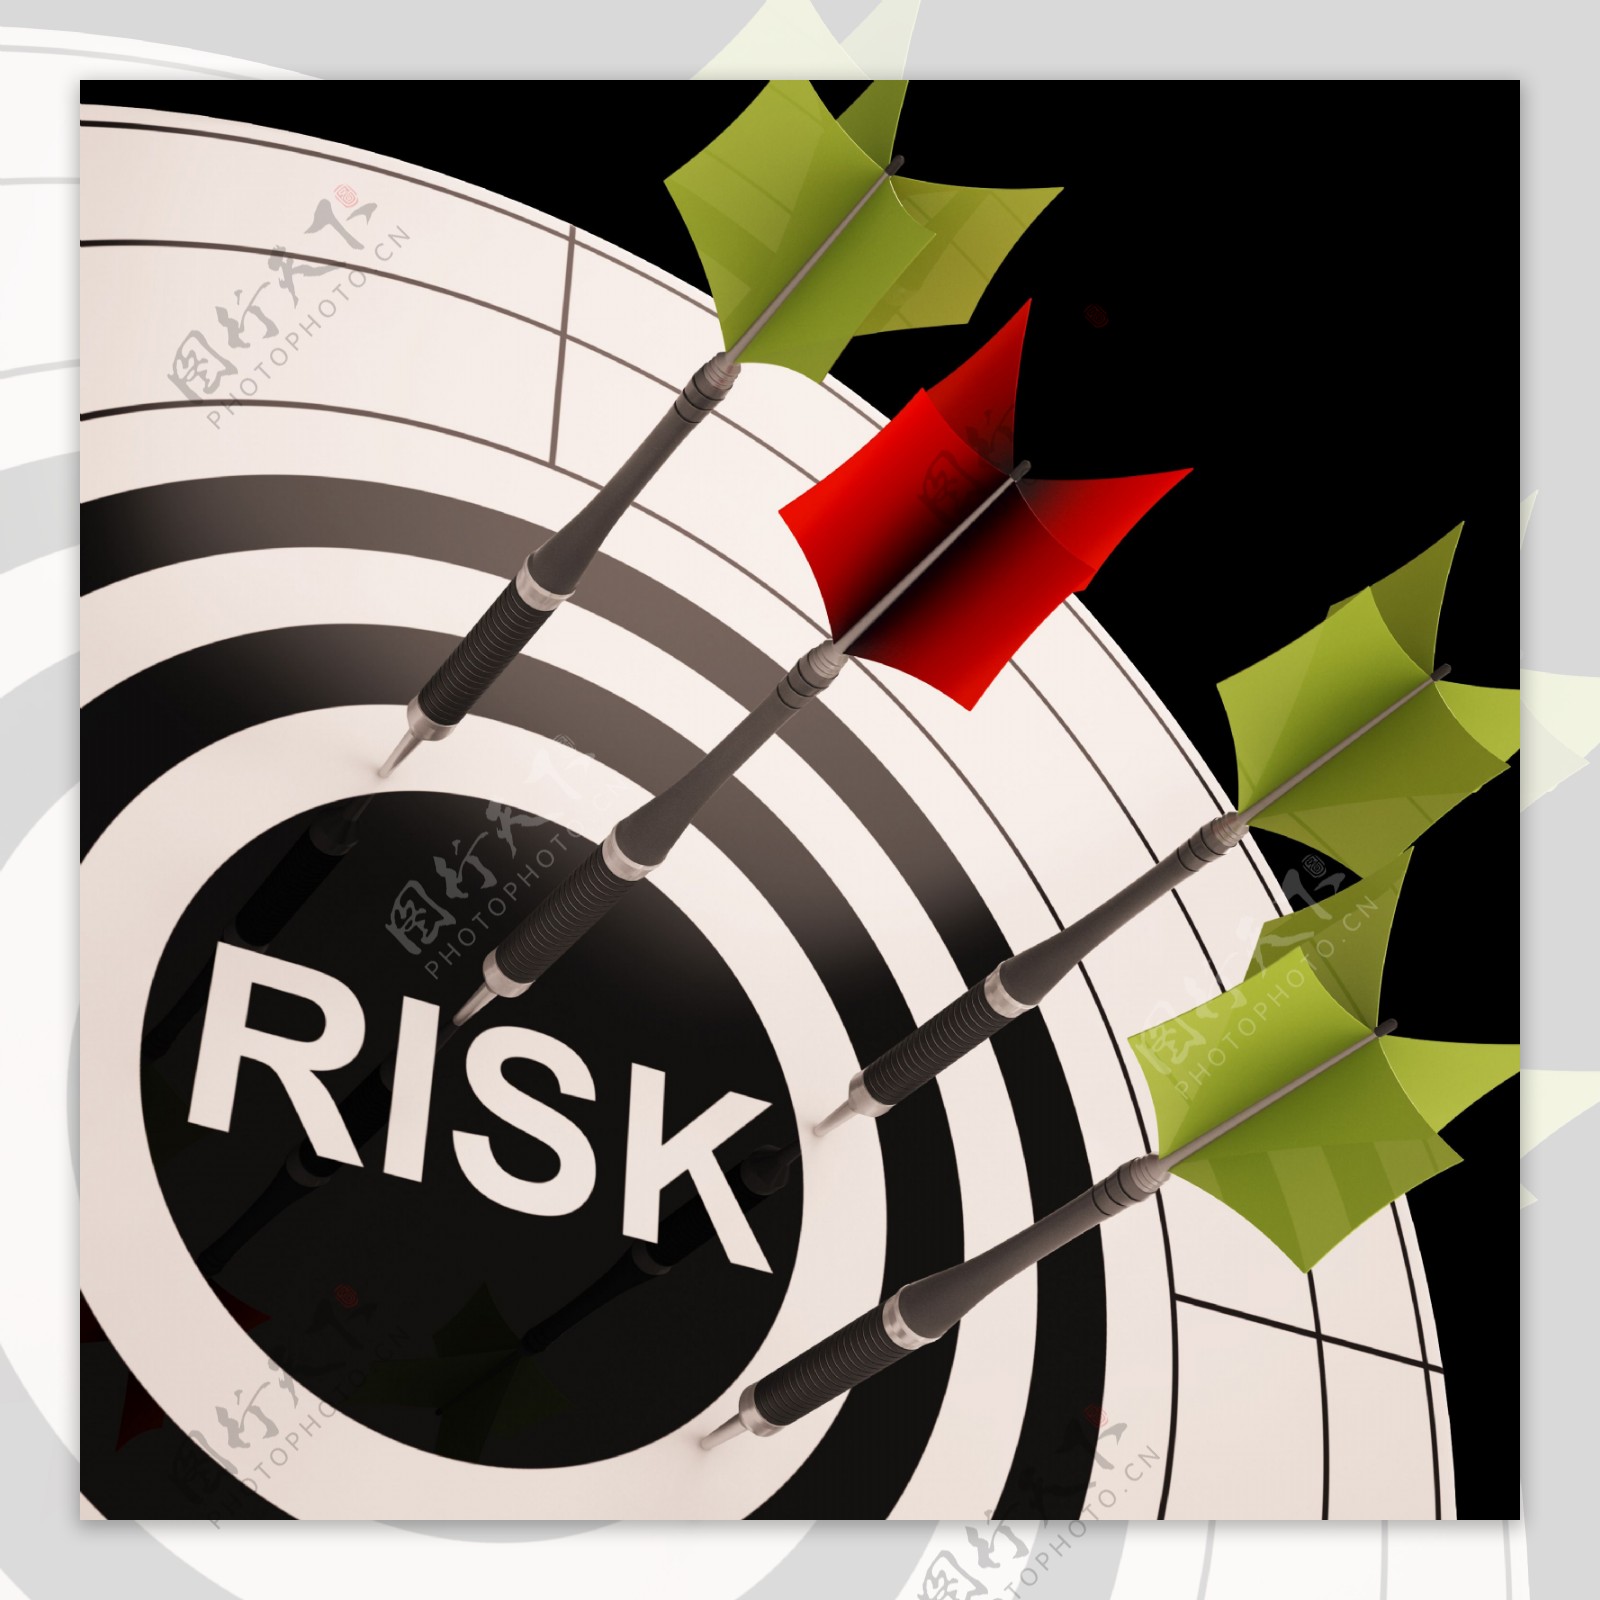 风险对靶显示高风险业务